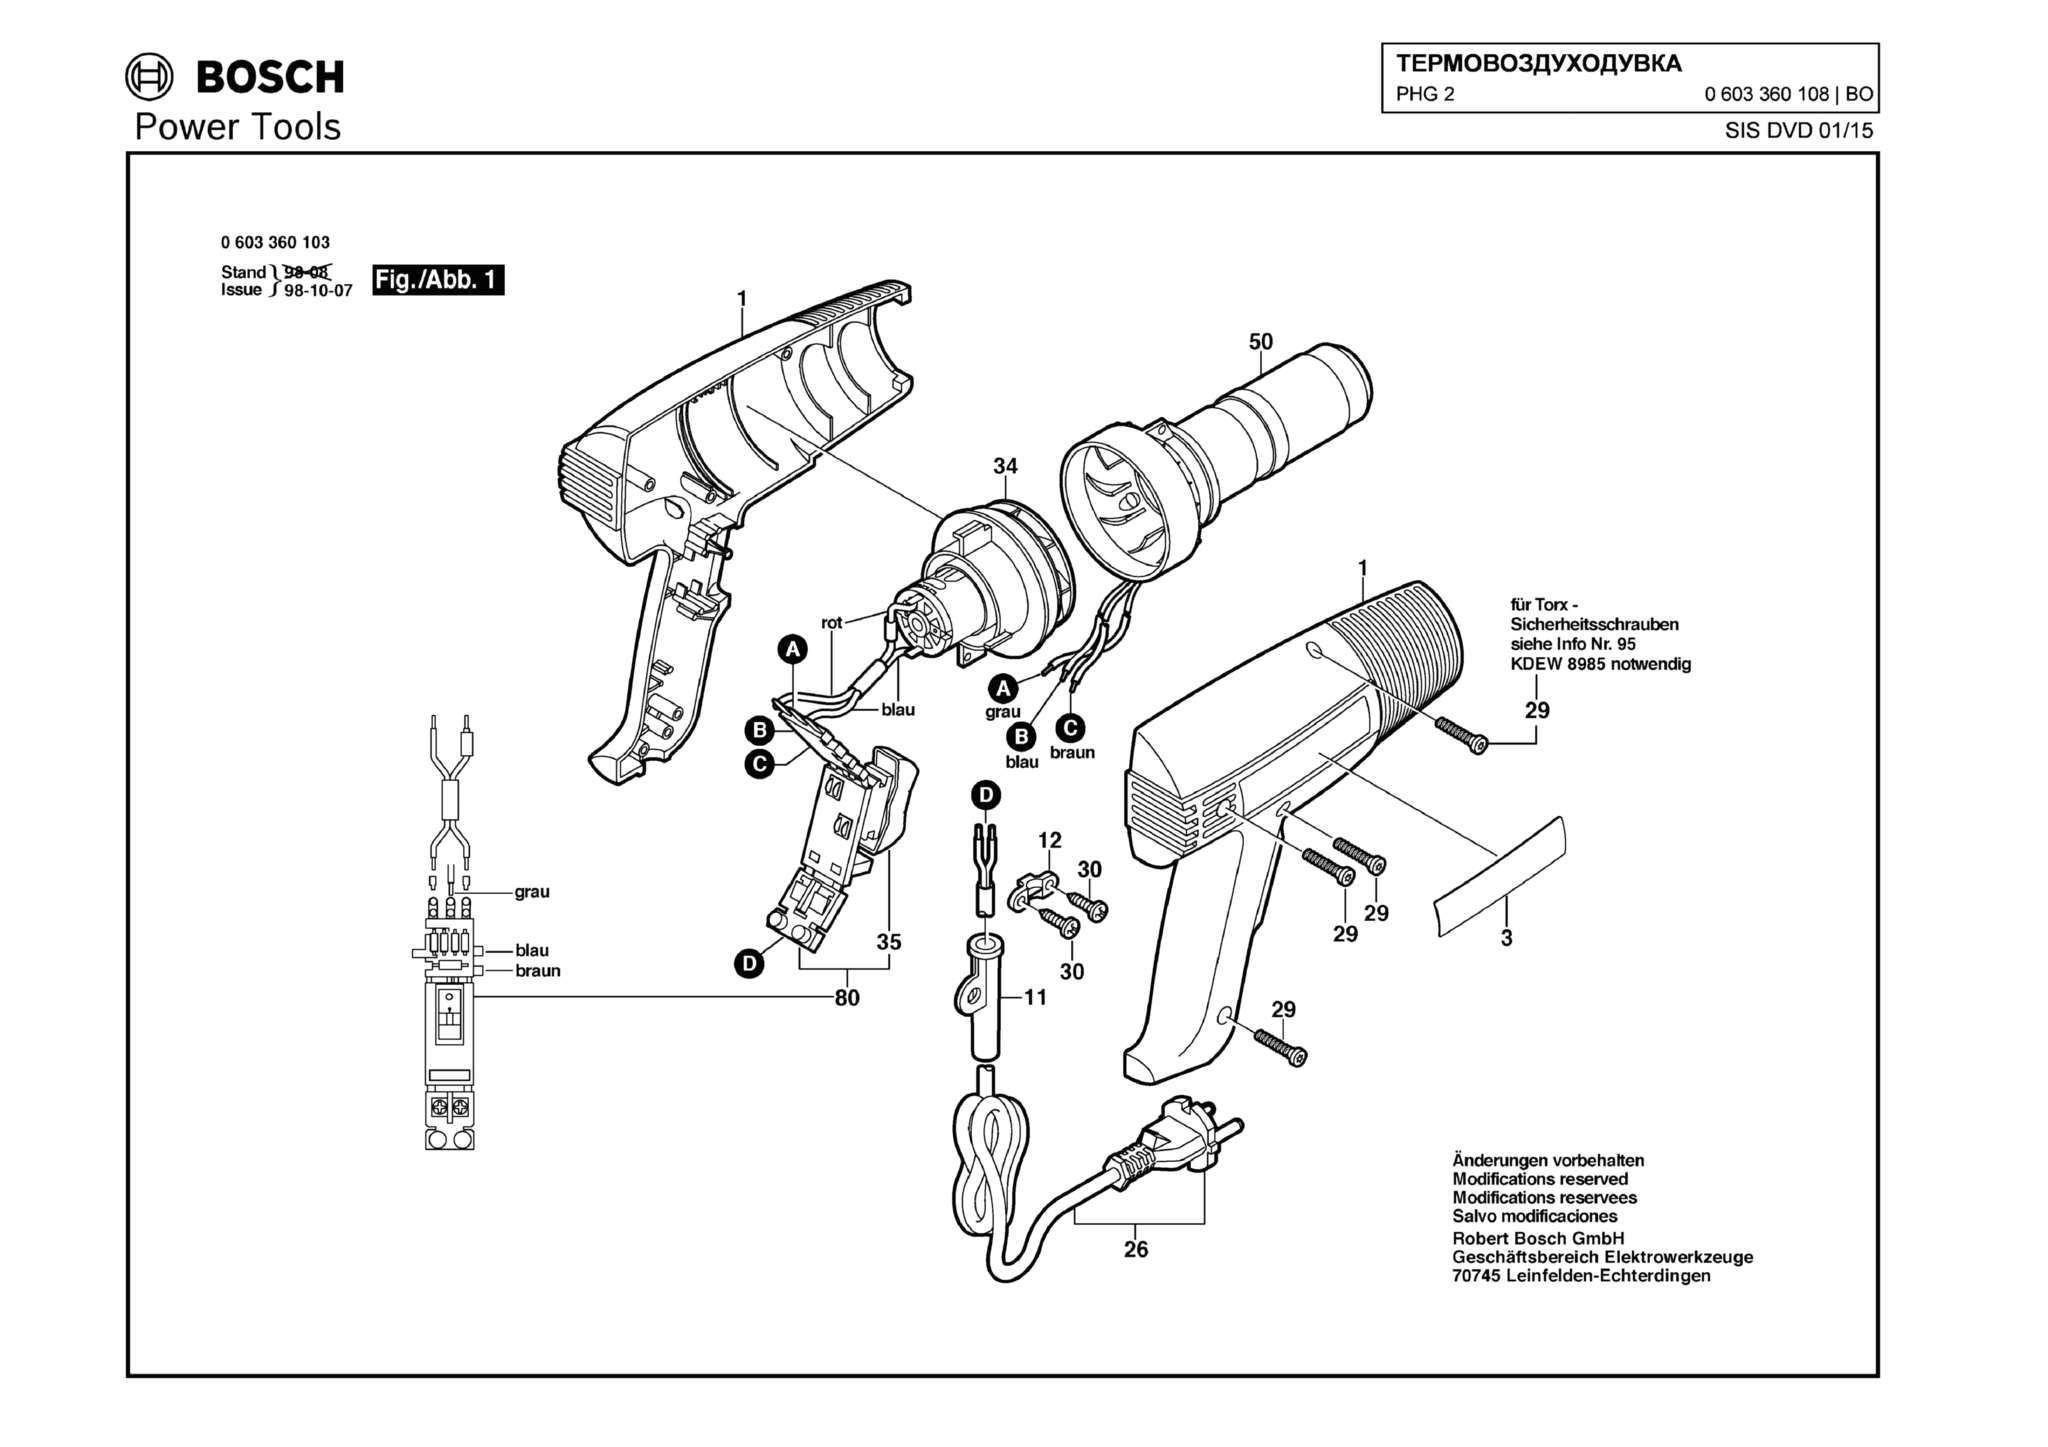 Запчасти, схема и деталировка Bosch PHG 2 (ТИП 0603360108)